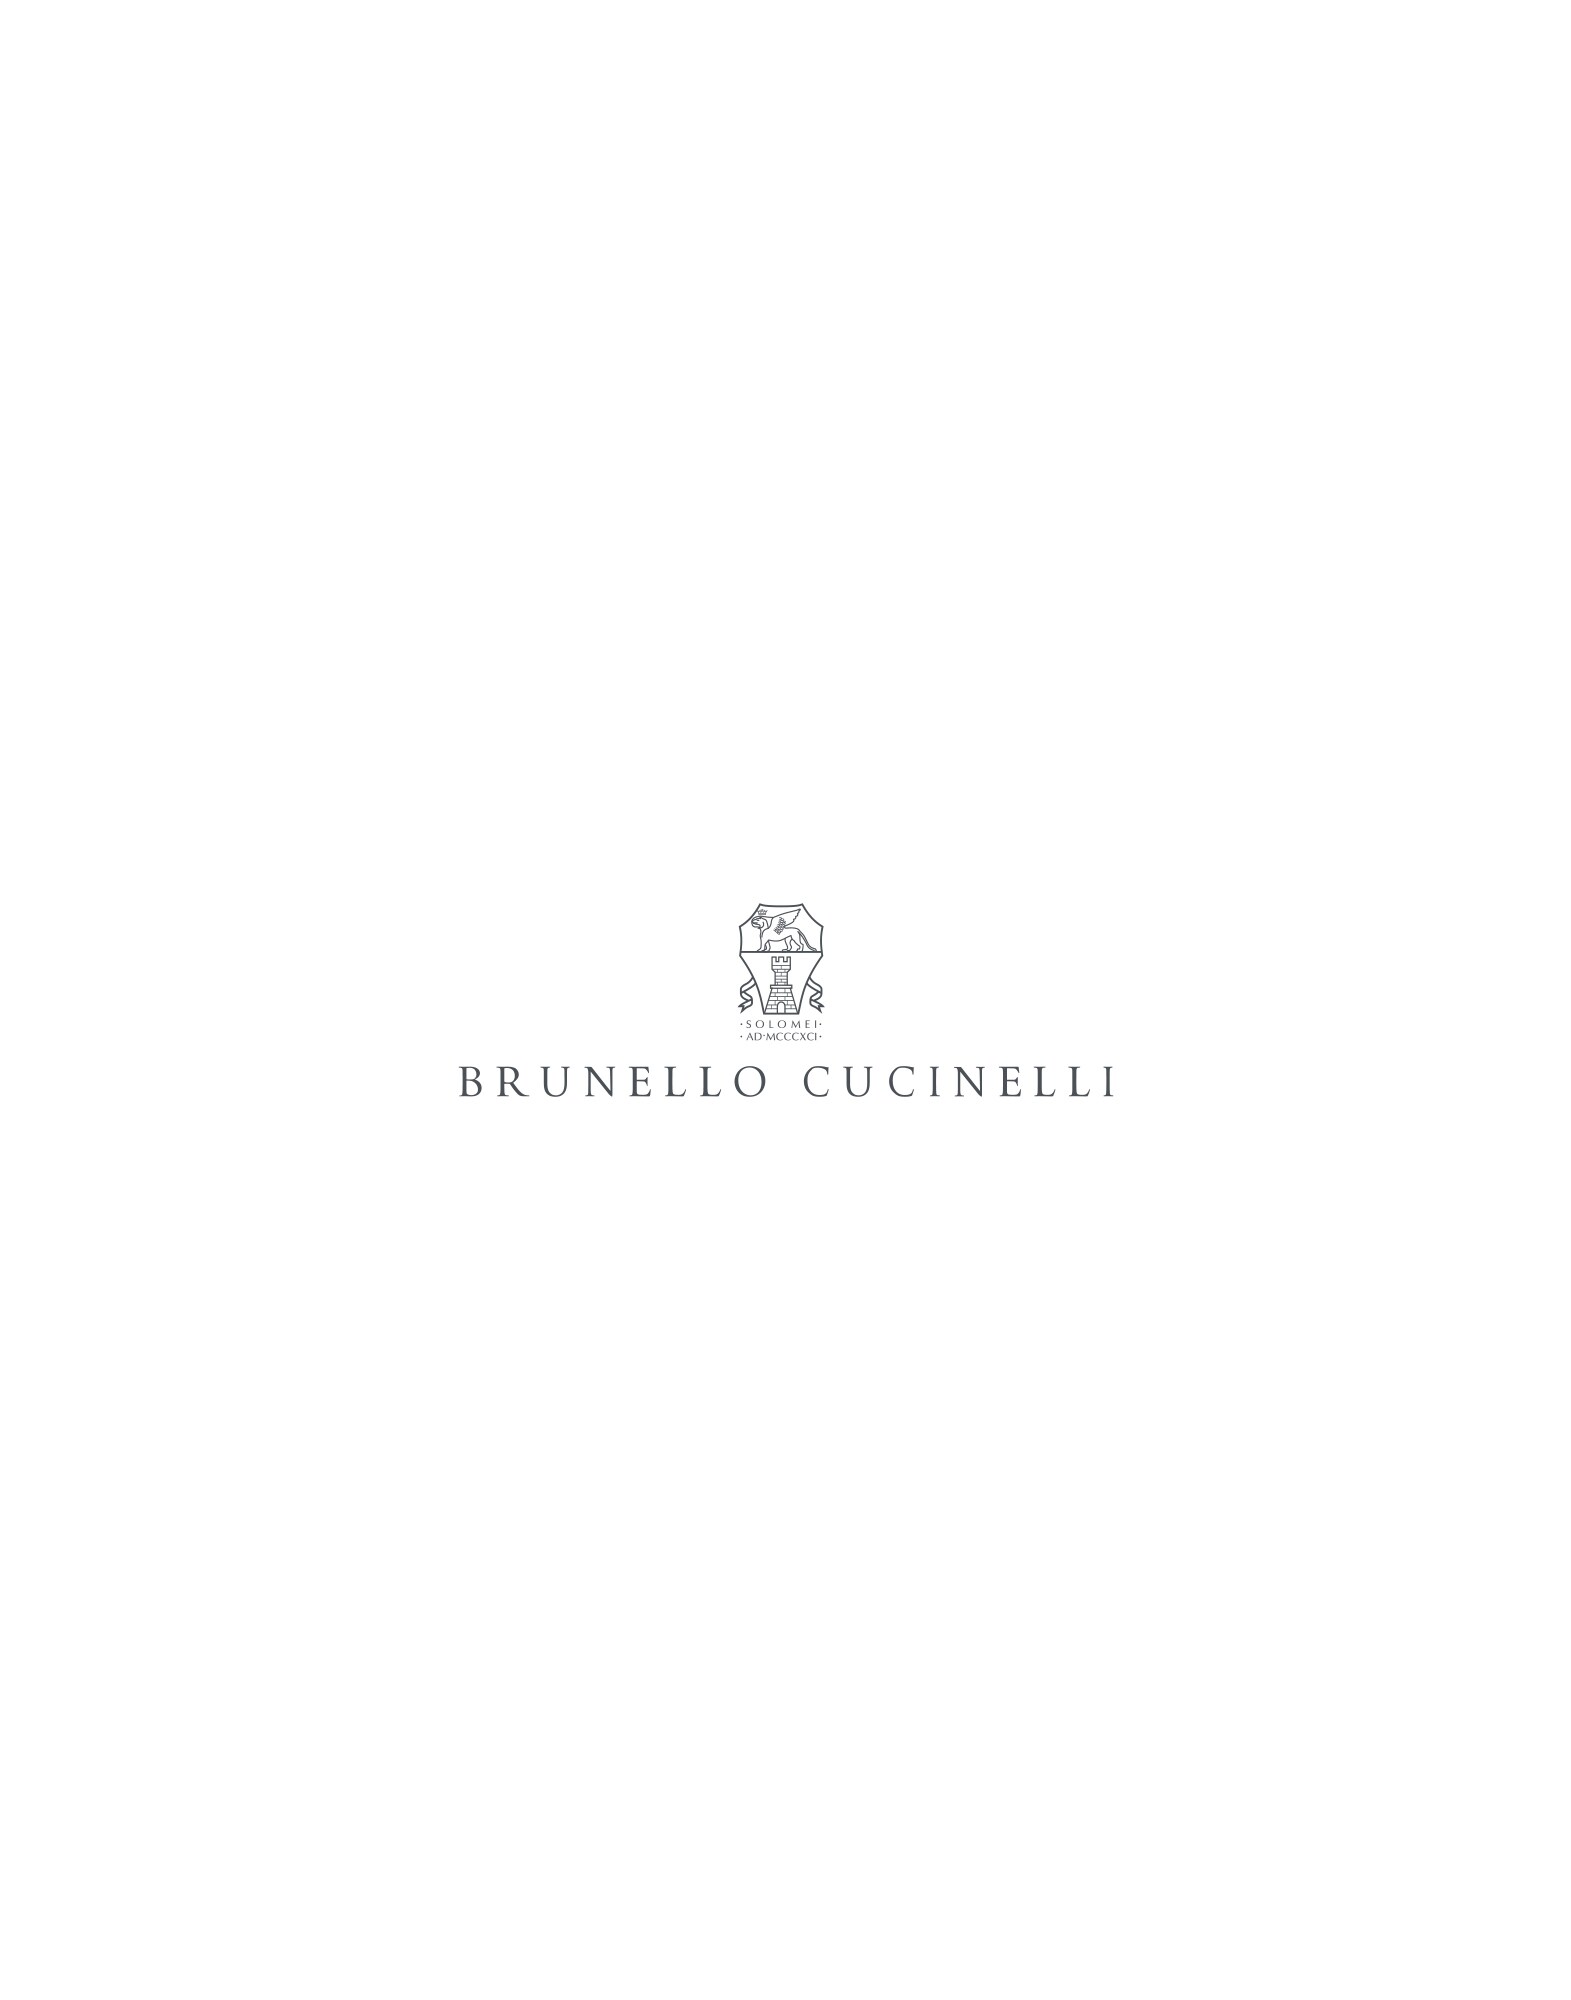 Money clip Brown Lifestyle -
                        Brunello Cucinelli 